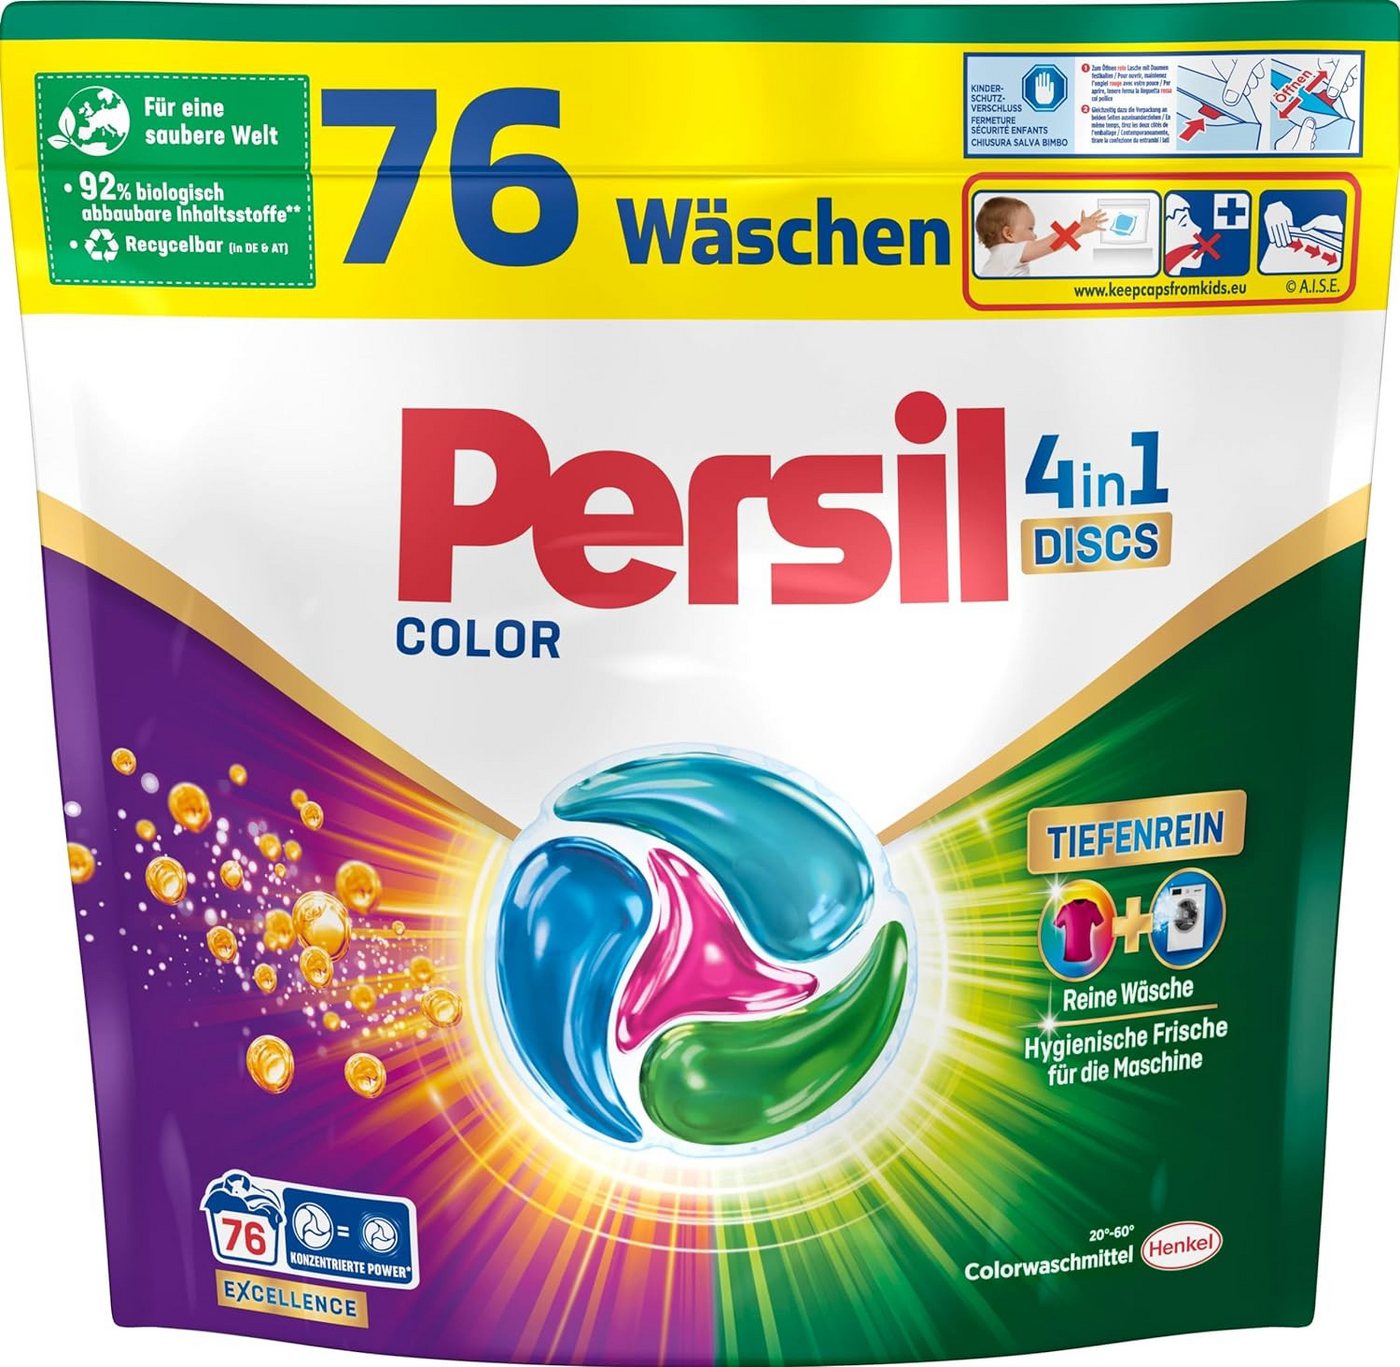 Persil Color 4-in-1 Discs 76 WL Colorwaschmittel (Großpack, [76-St. Kapseln mit Tiefenrein Technologie) von Persil